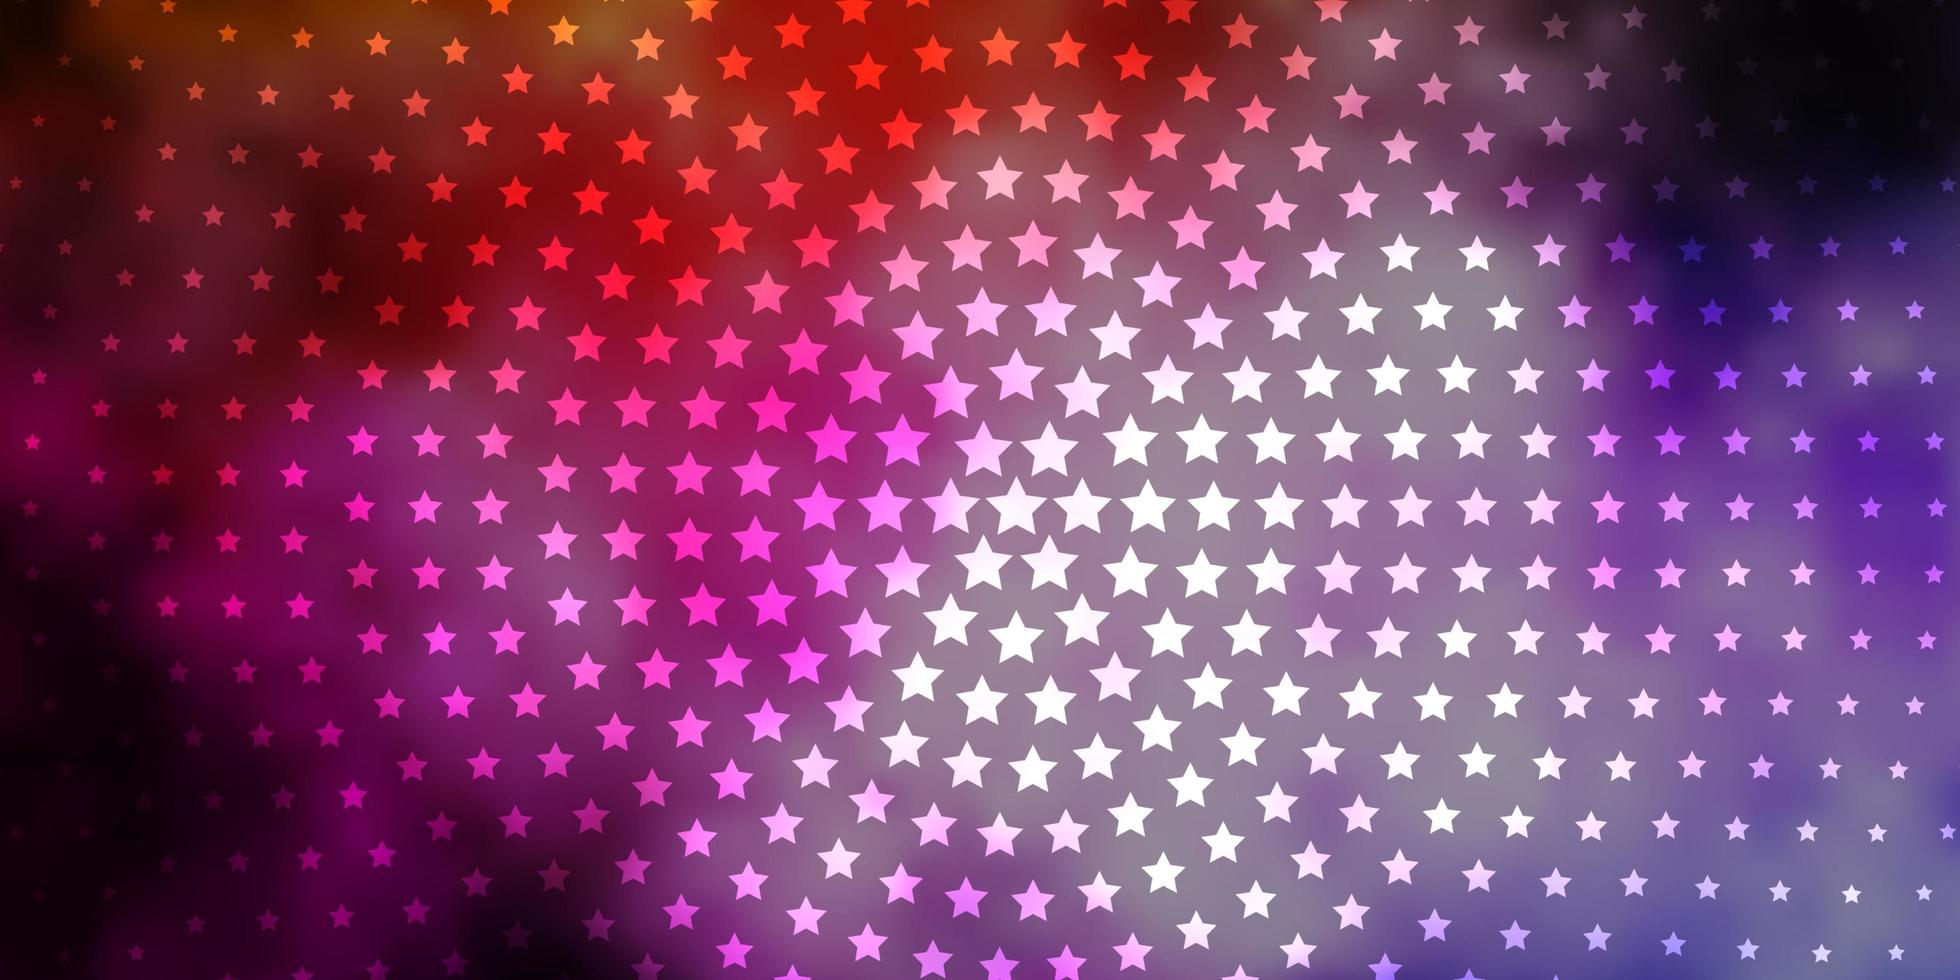 mörkrosa gul vektormall med neonstjärnor suddar ut dekorativ design i enkel stil med stjärnmönster för nyårsannonsbroschyrer vektor